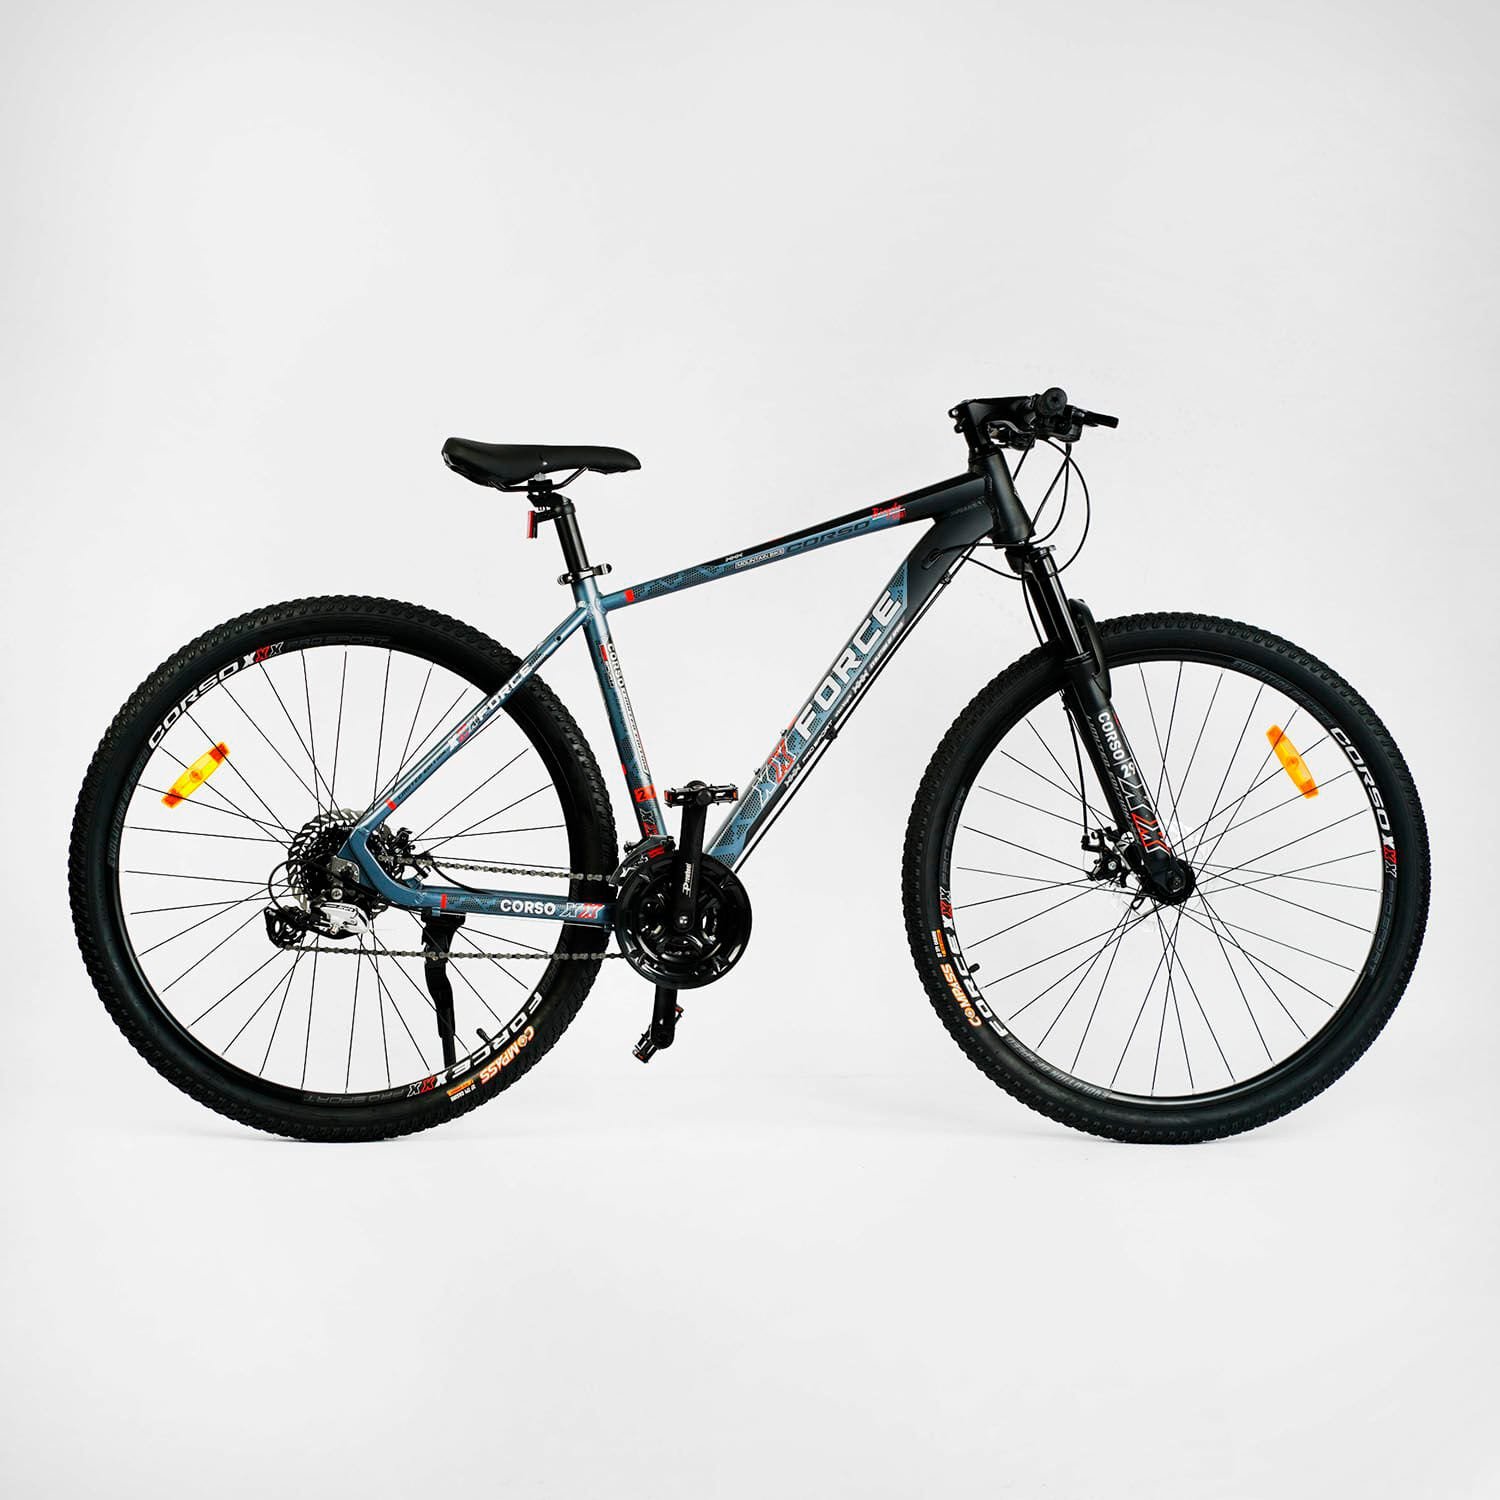 Велосипед Спортивний Corso "X-Force" 29" (XR-29047) рама алюмінієва 19", обладнання Shimano Altus, 24 швидкості, вилка MOMA